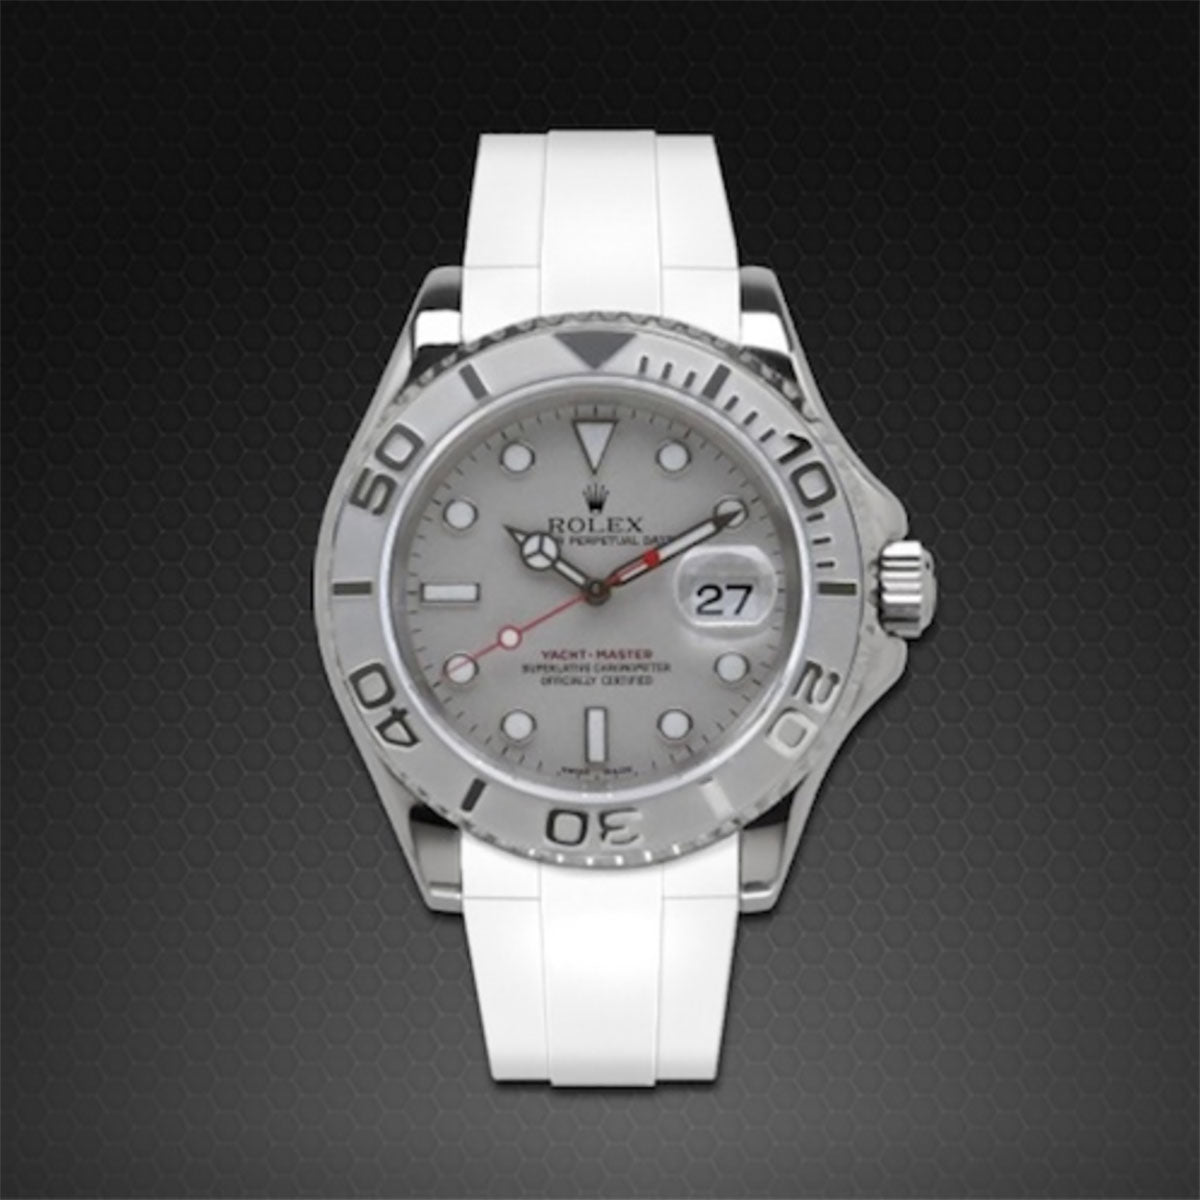 Rolex - Rubber B - Bracelet caoutchouc pour Yachtmaster 40mm - Série classique - watch band leather strap - ABP Concept -